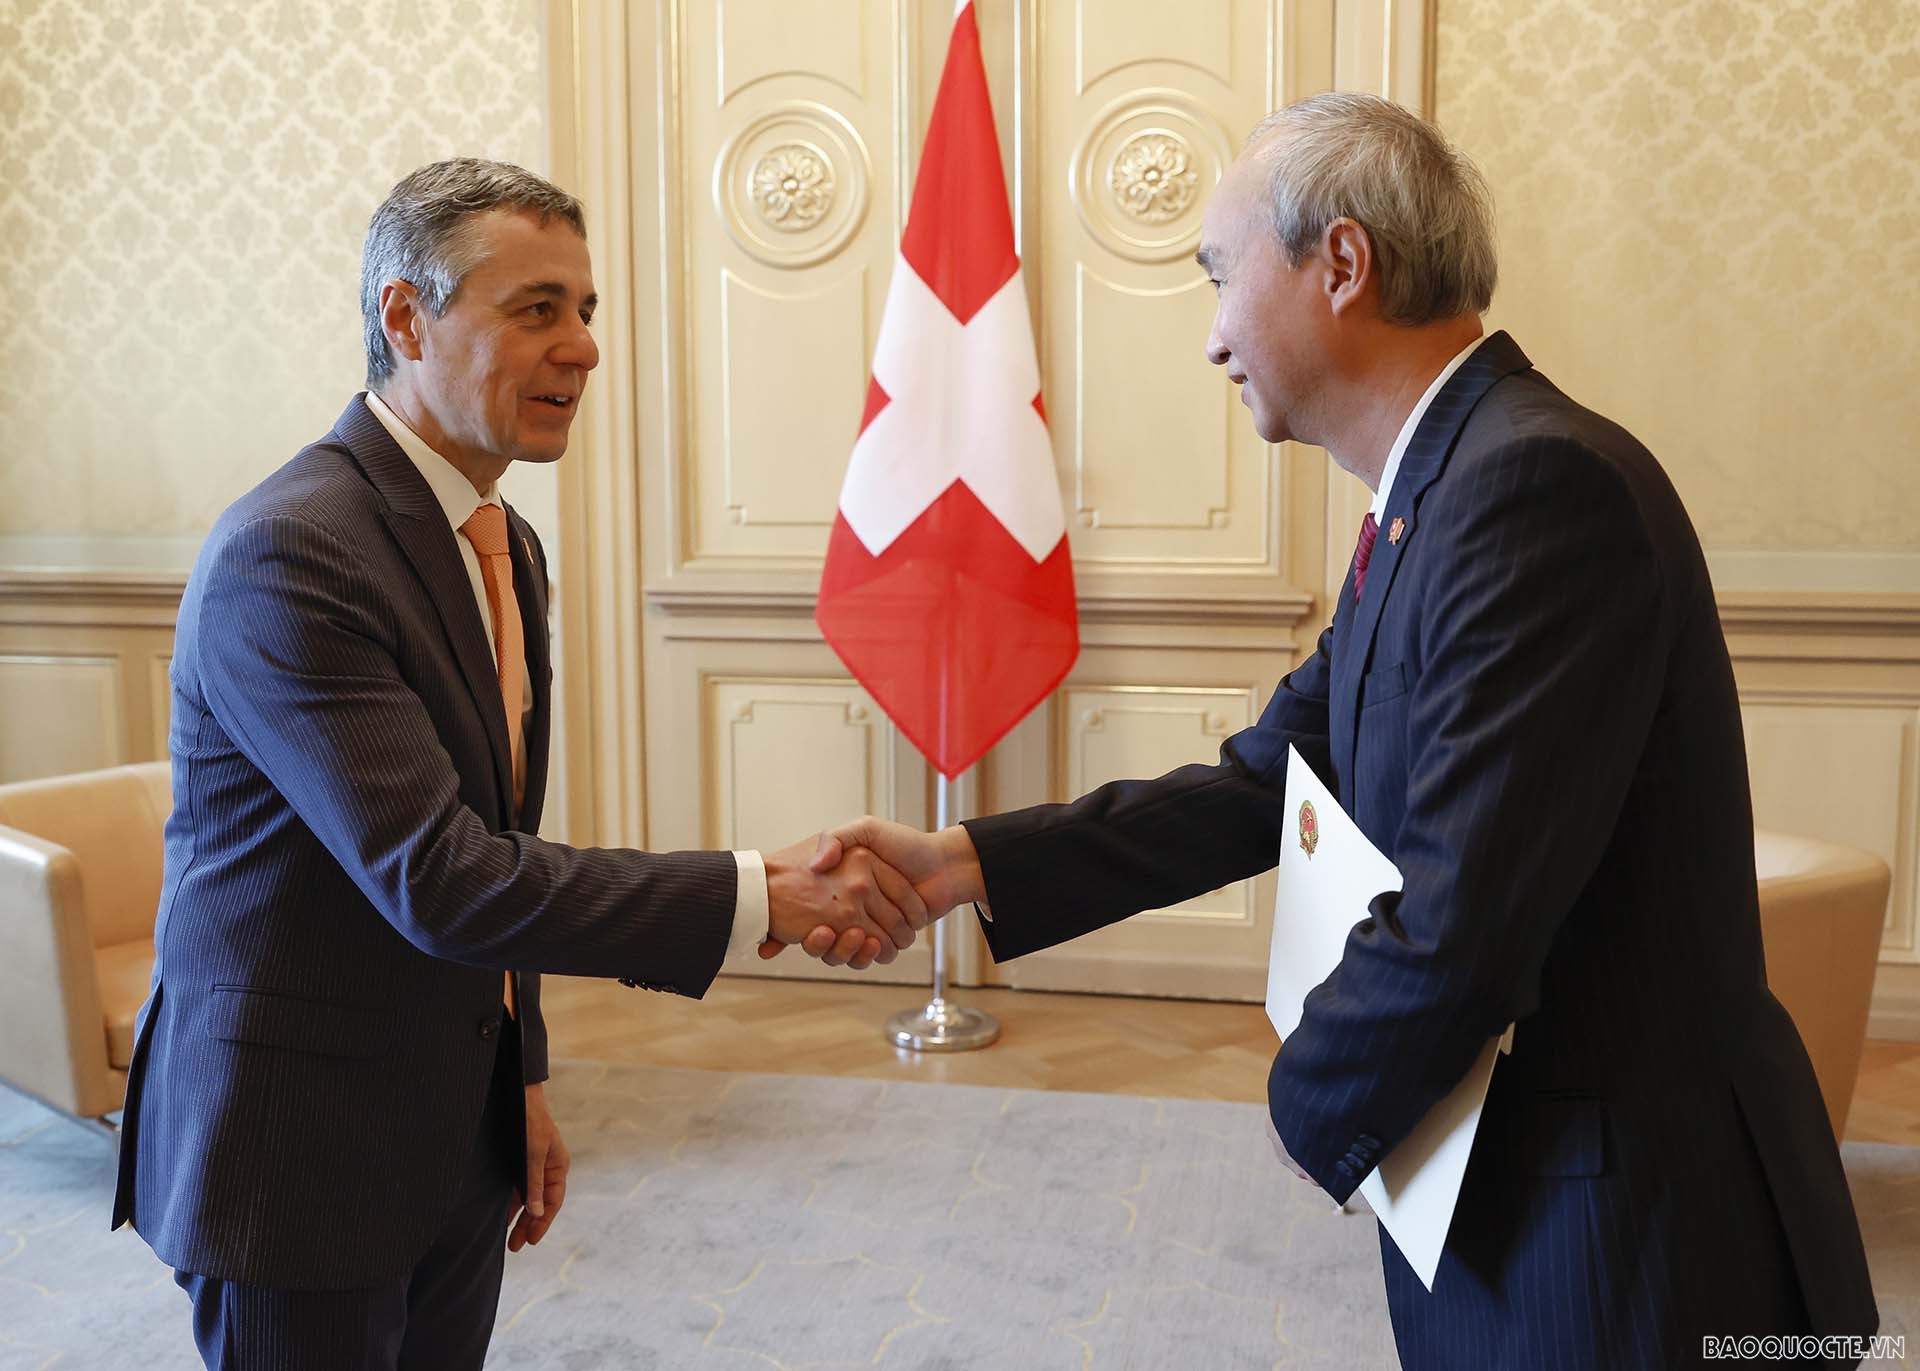 Đại sứ Phùng Thế Long trình Thư ủy nhiệm lên Tổng thống Thụy Sỹ